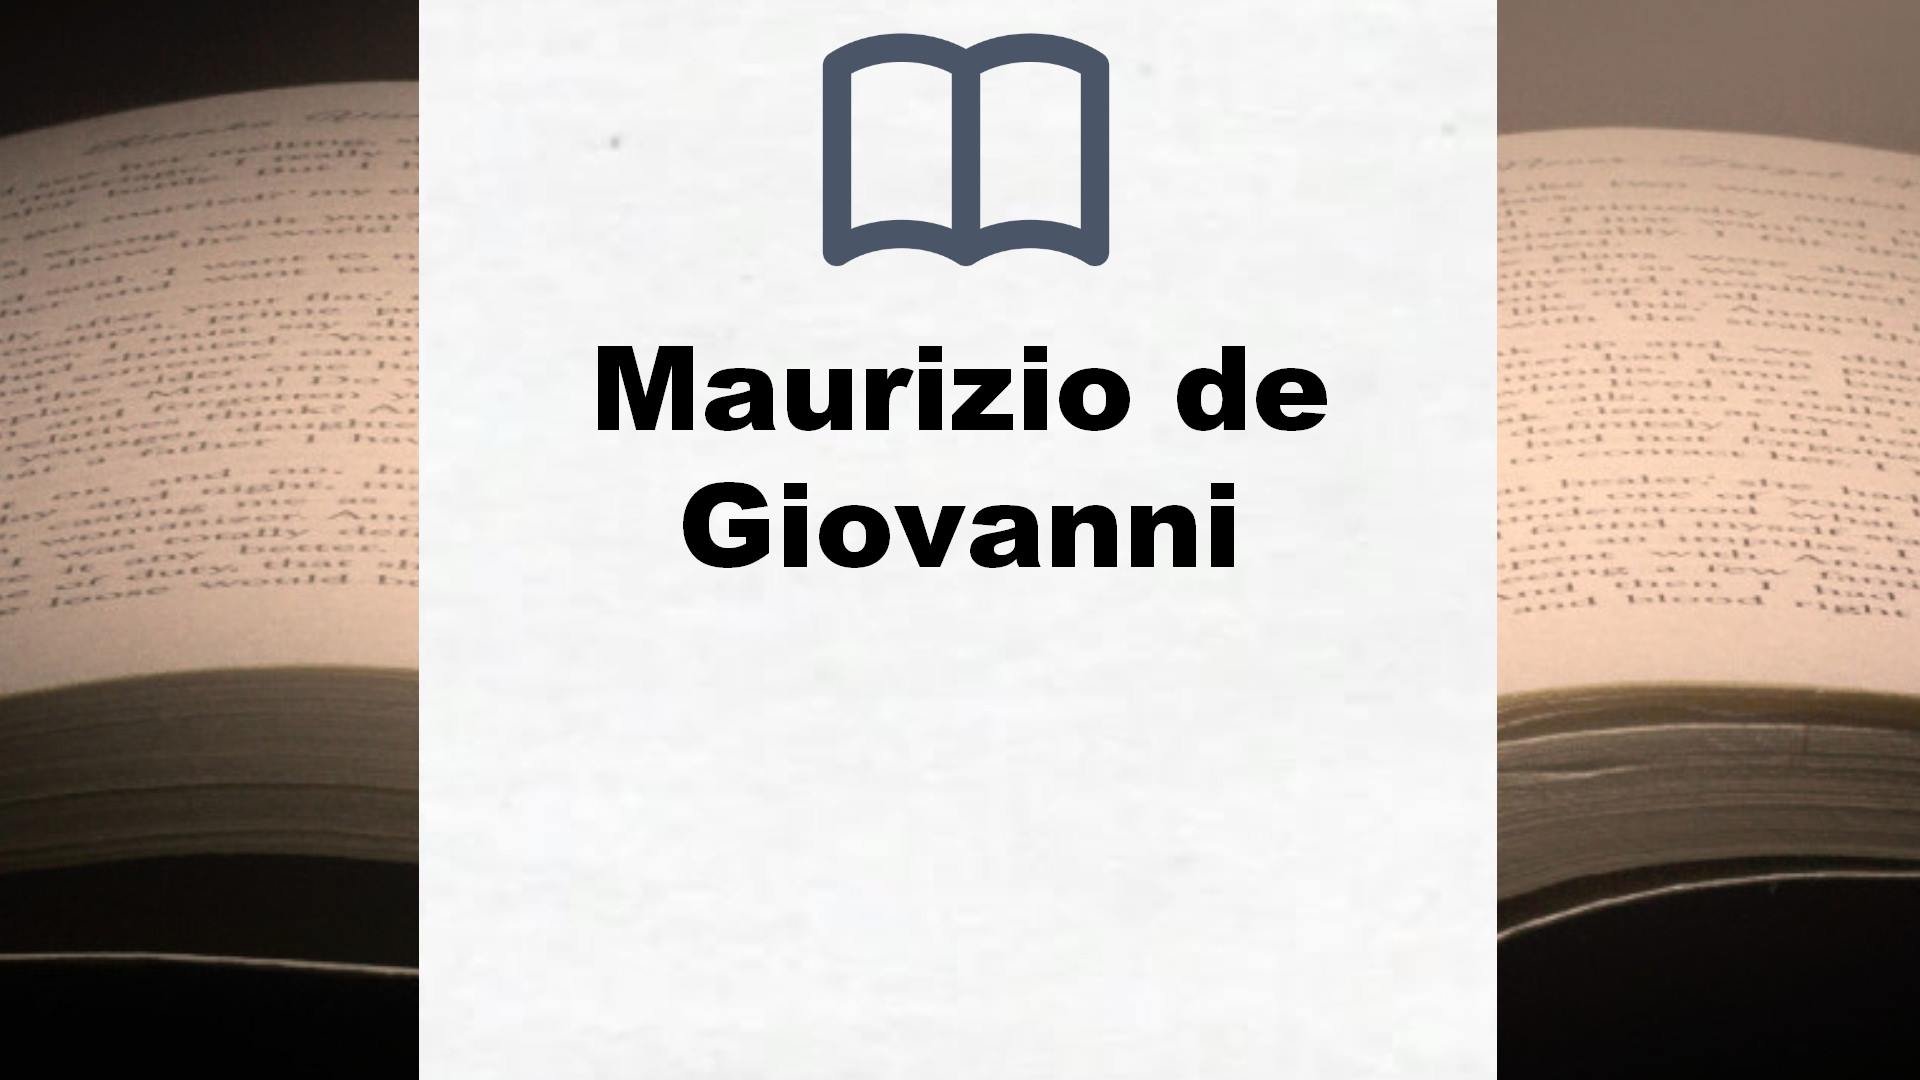 Maurizio de Giovanni Bücher